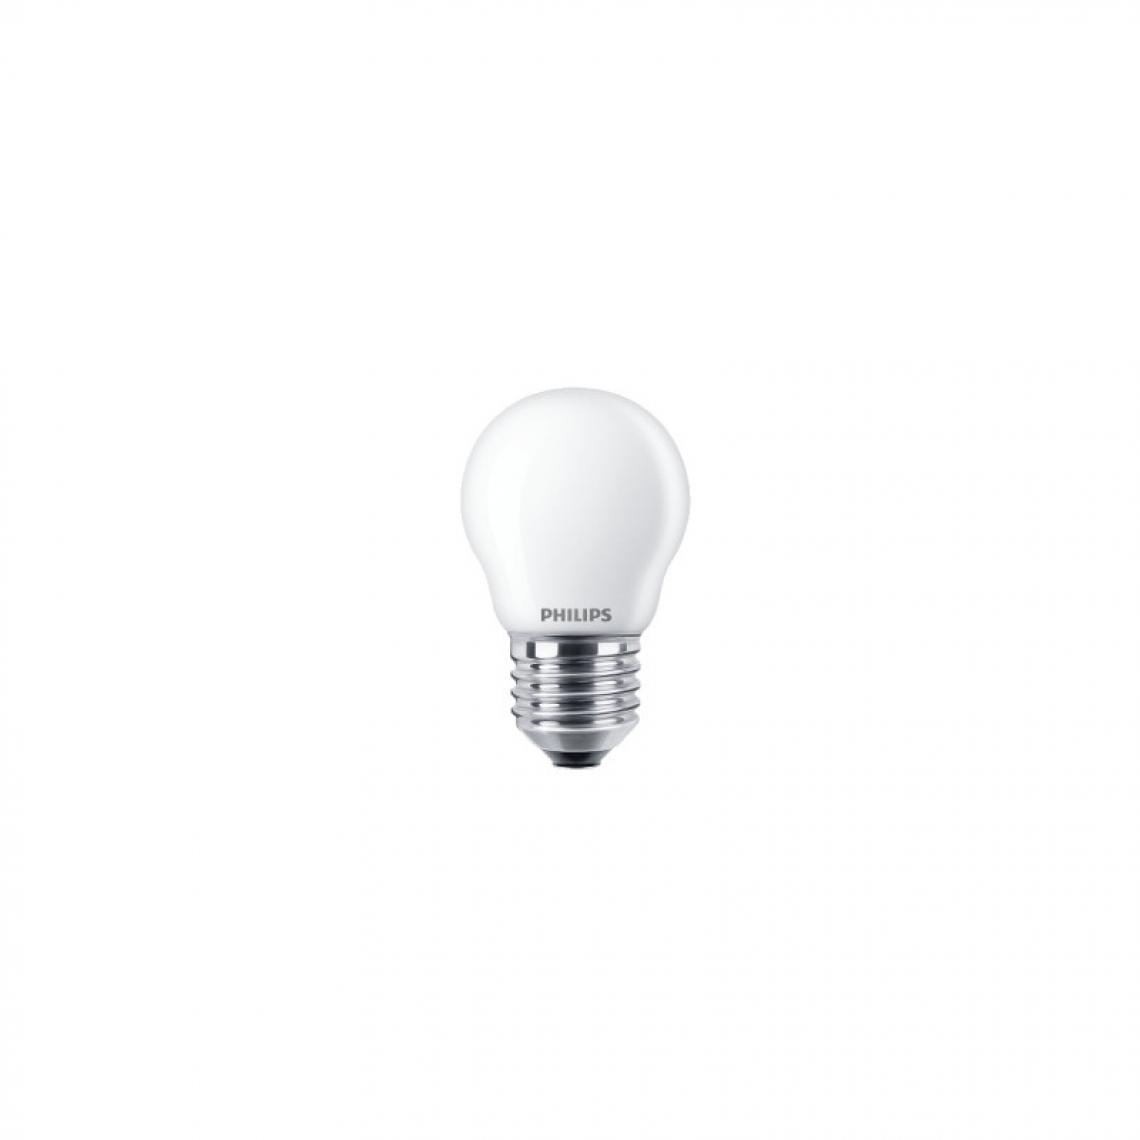 Philips - Ampoule LED sphérique PHILIPS - EyeComfort - 6,5W - 806 lumens - 4000K - E27 - 93021 - Ampoules LED